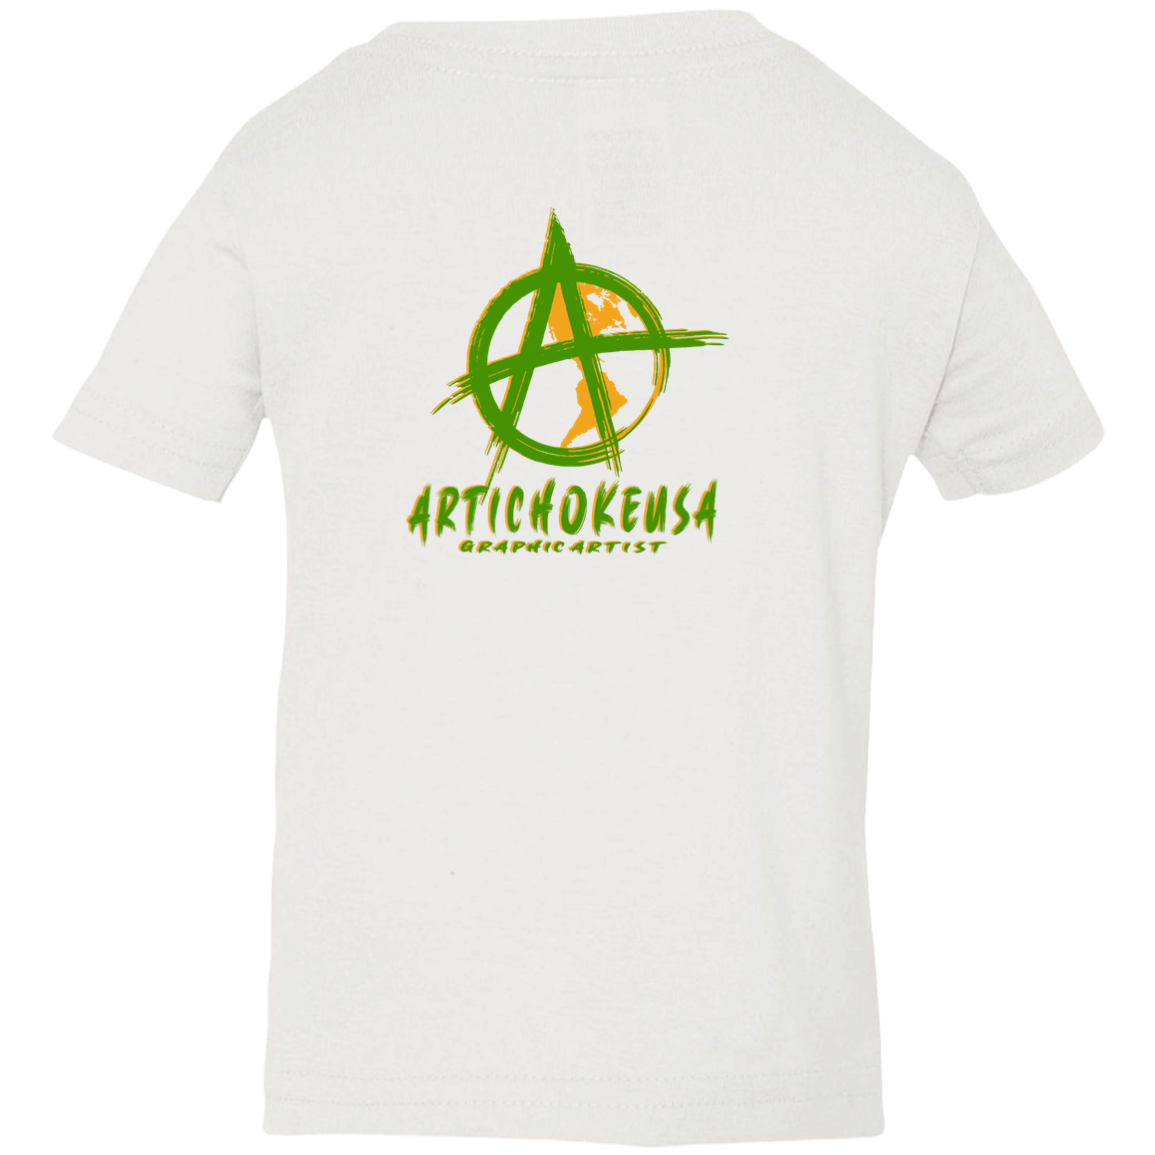 ArtichokeUSA Custom Design. EARTH-ART=EH. Infant Jersey T-Shirt